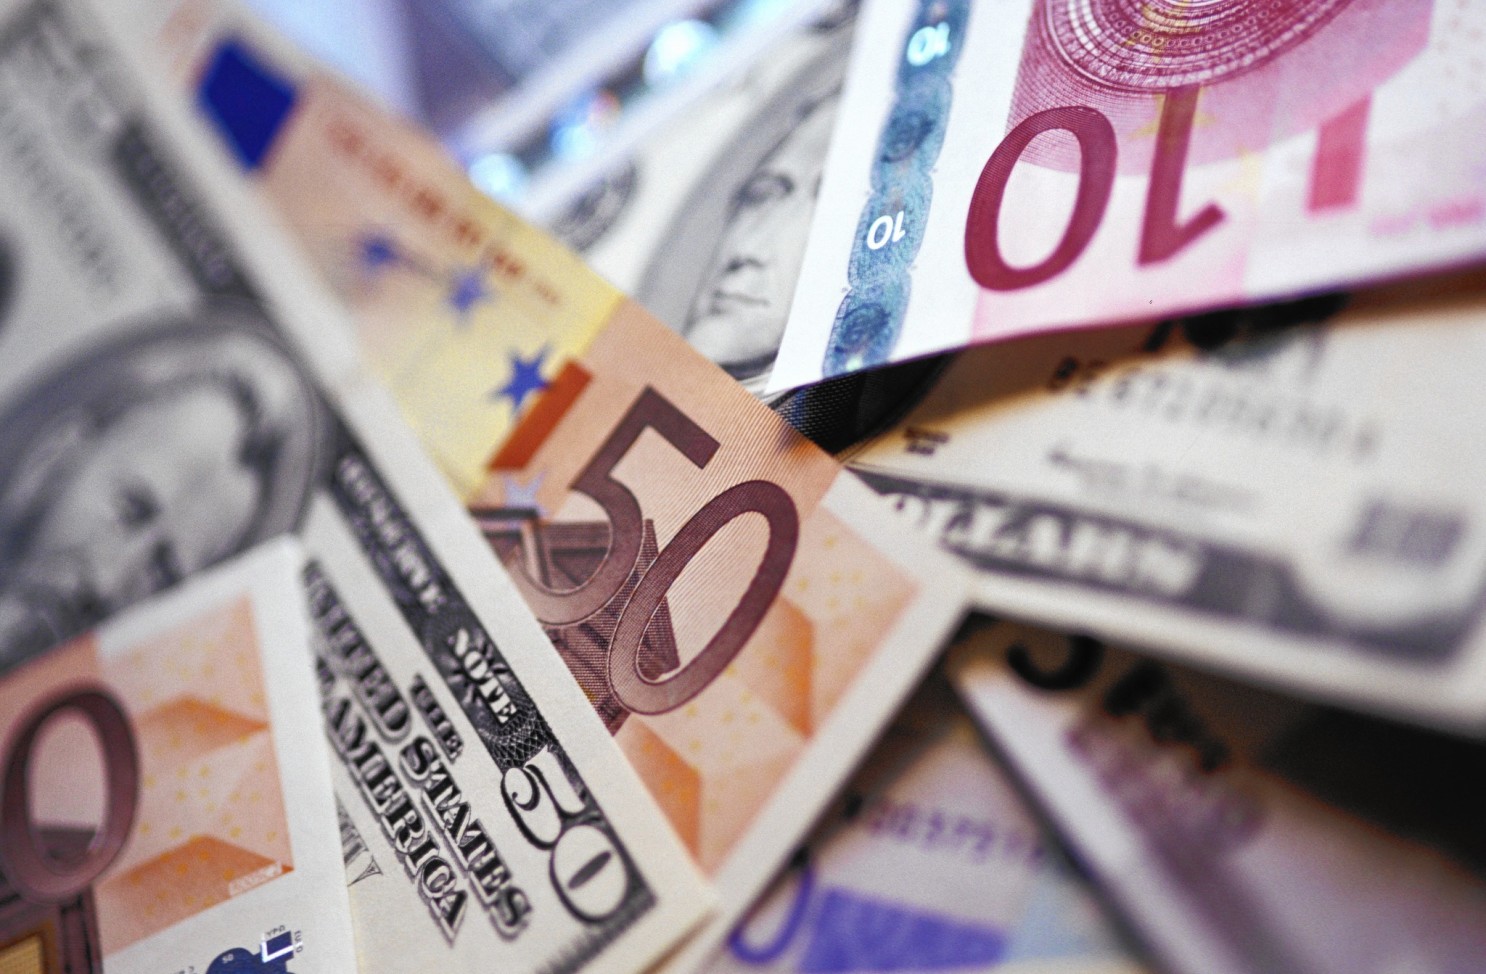 La divisa europea se fortaleció frente al dólar. Superó este viernes el cambio de 1,22 en el mercado de divisas de Fráncfort (Alemania)